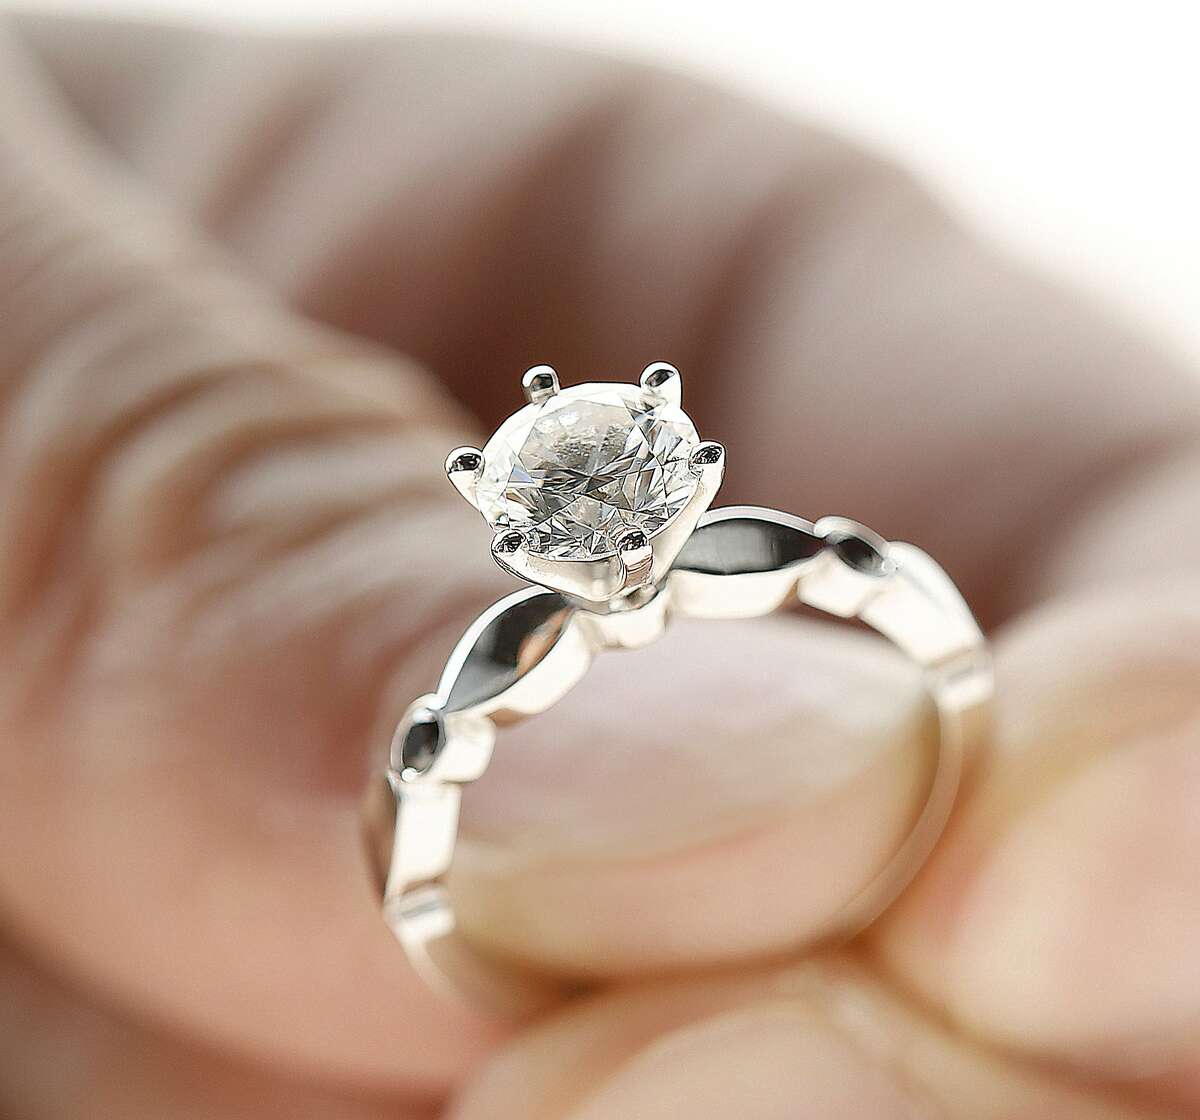 Dani Parker's engagement ring on Thursday, September 1, 2016, in San Francisco, Calif.